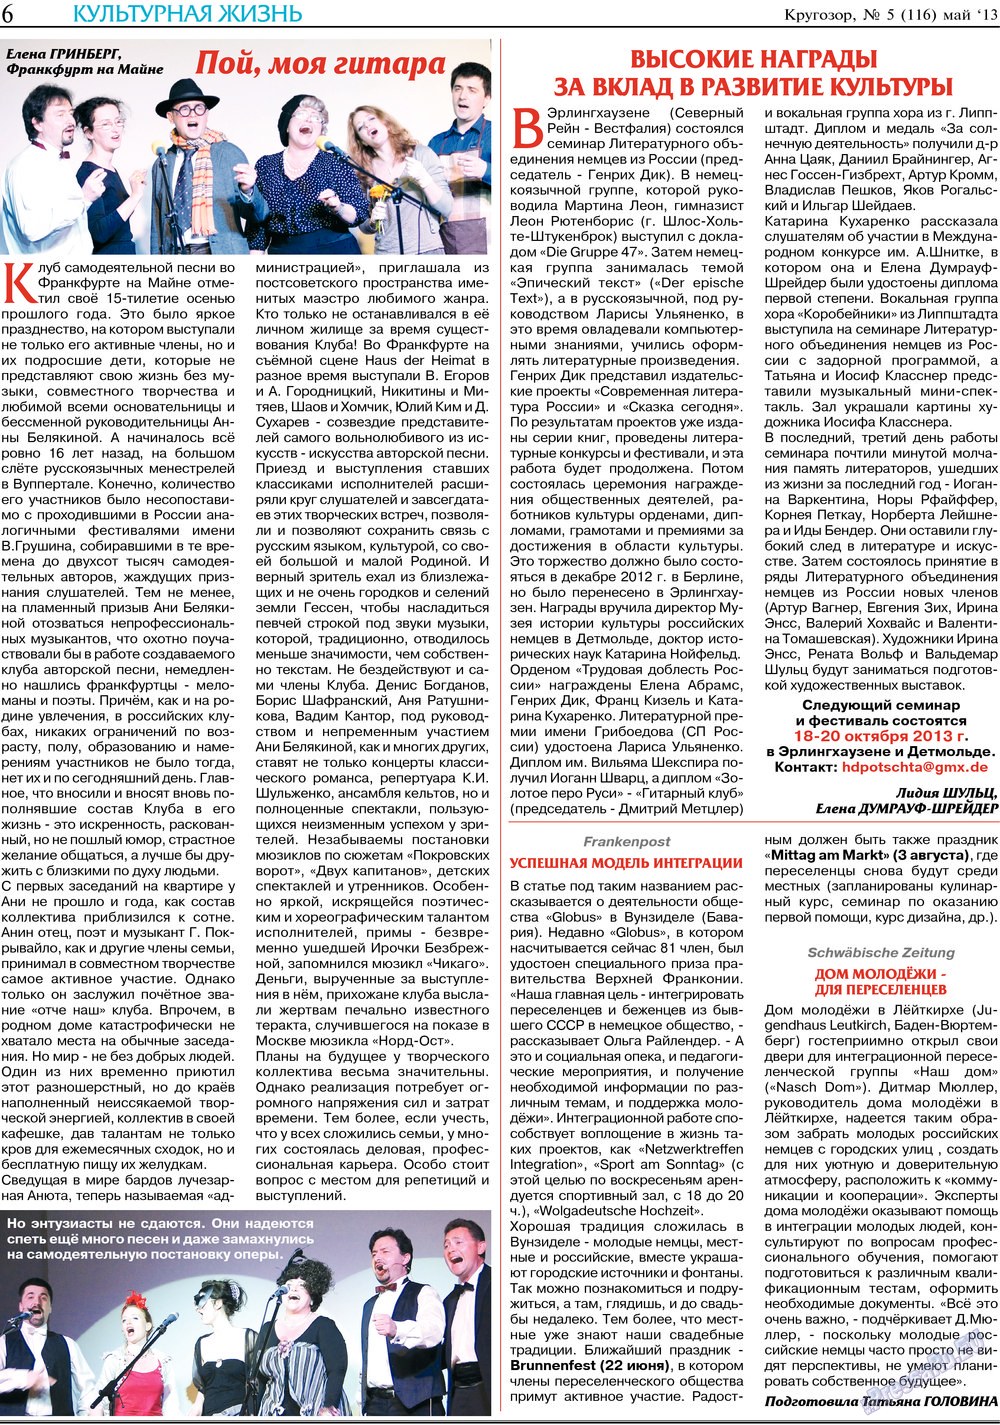 Кругозор, газета. 2013 №5 стр.6